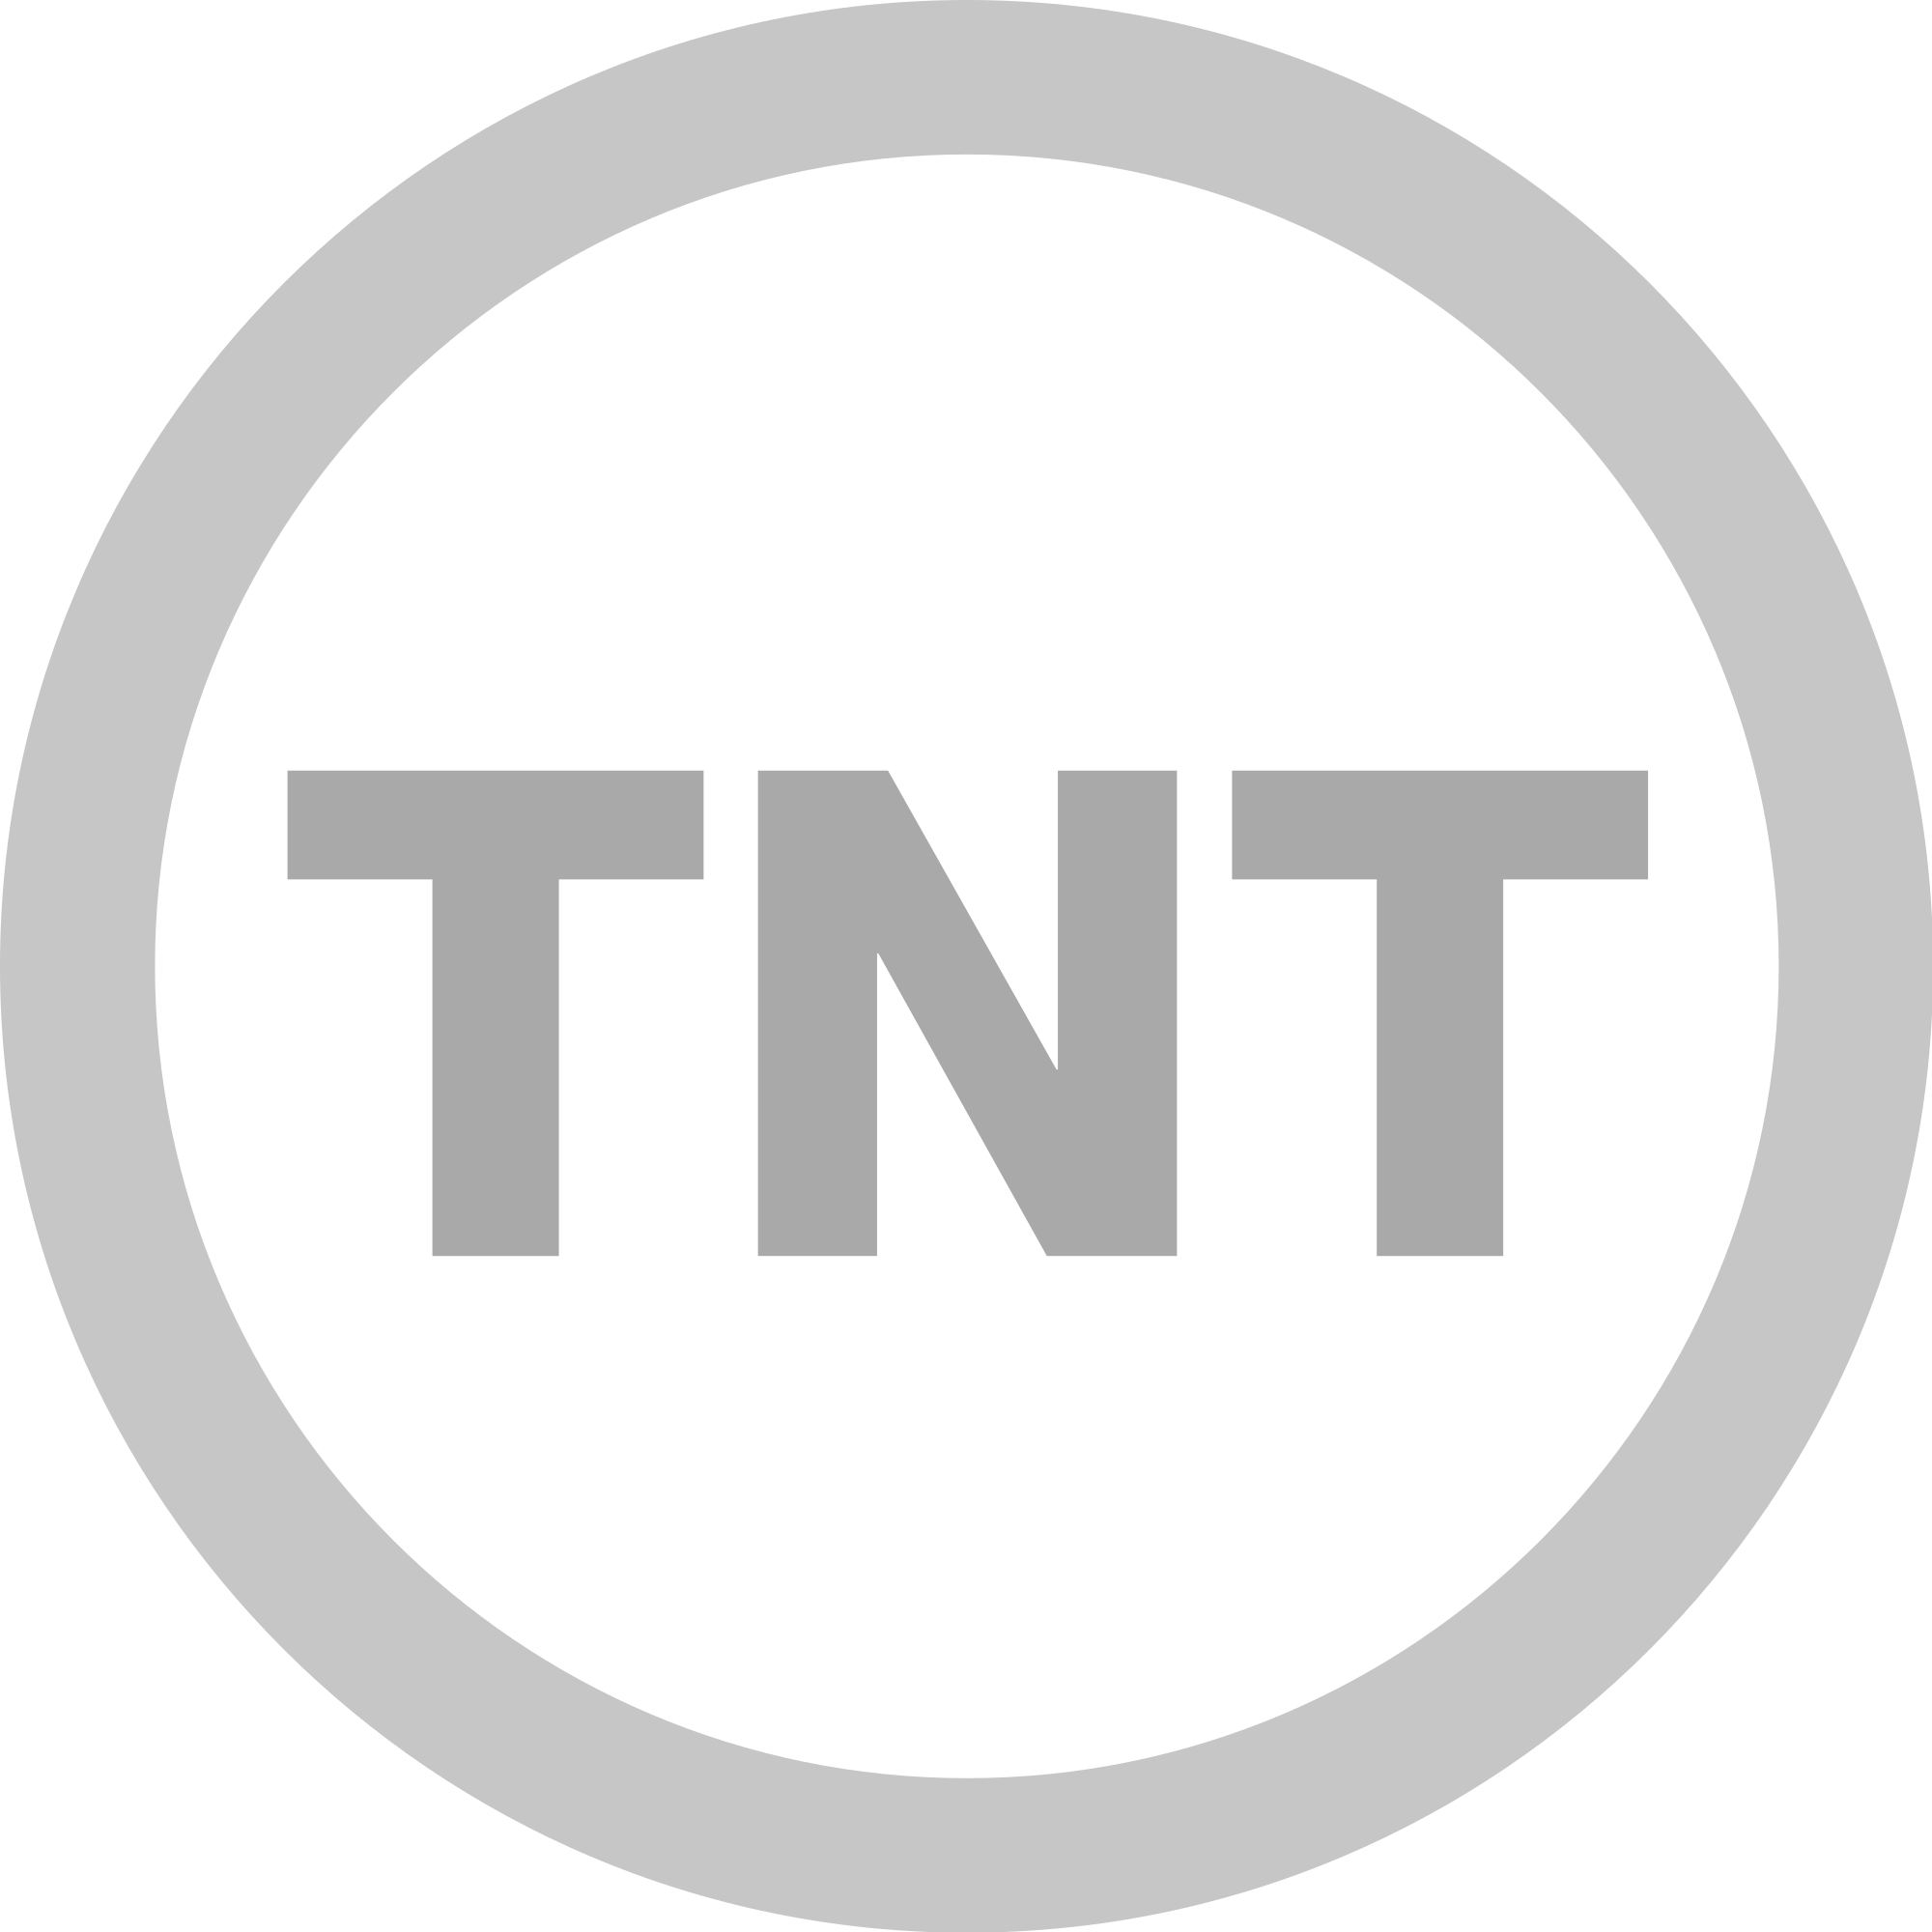 TNT_TV_logo.svg.png